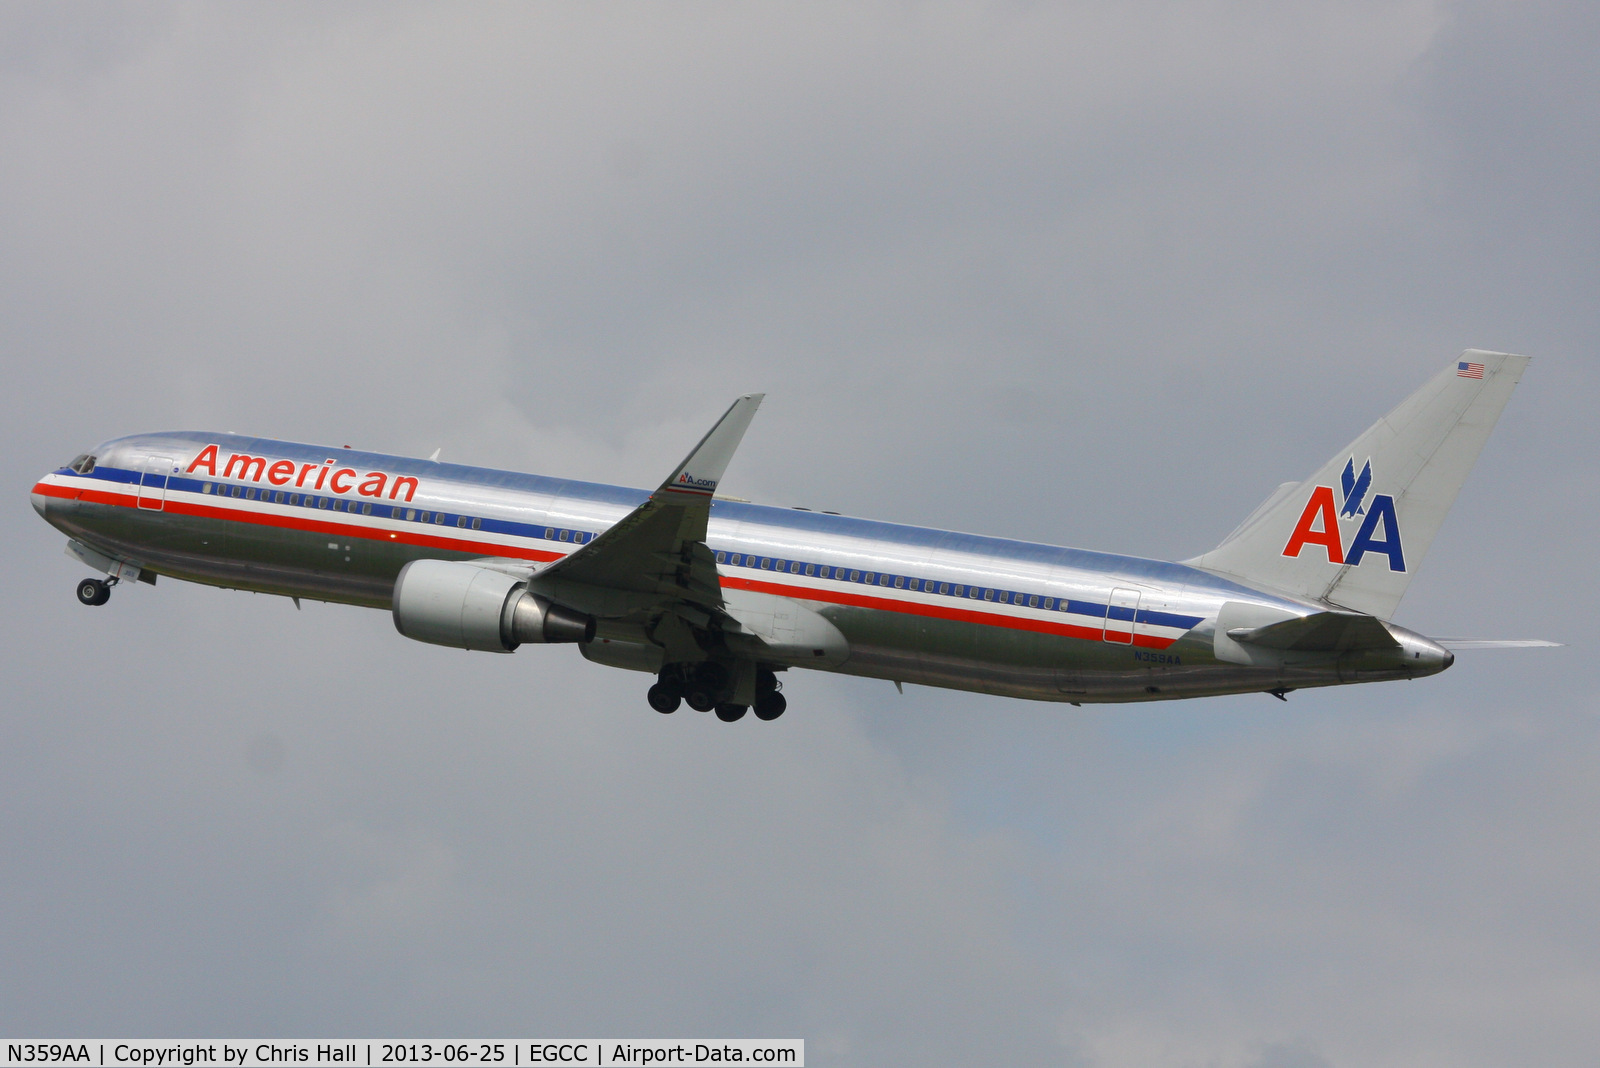 N359AA, 1988 Boeing 767-323 C/N 24040, American Airlines